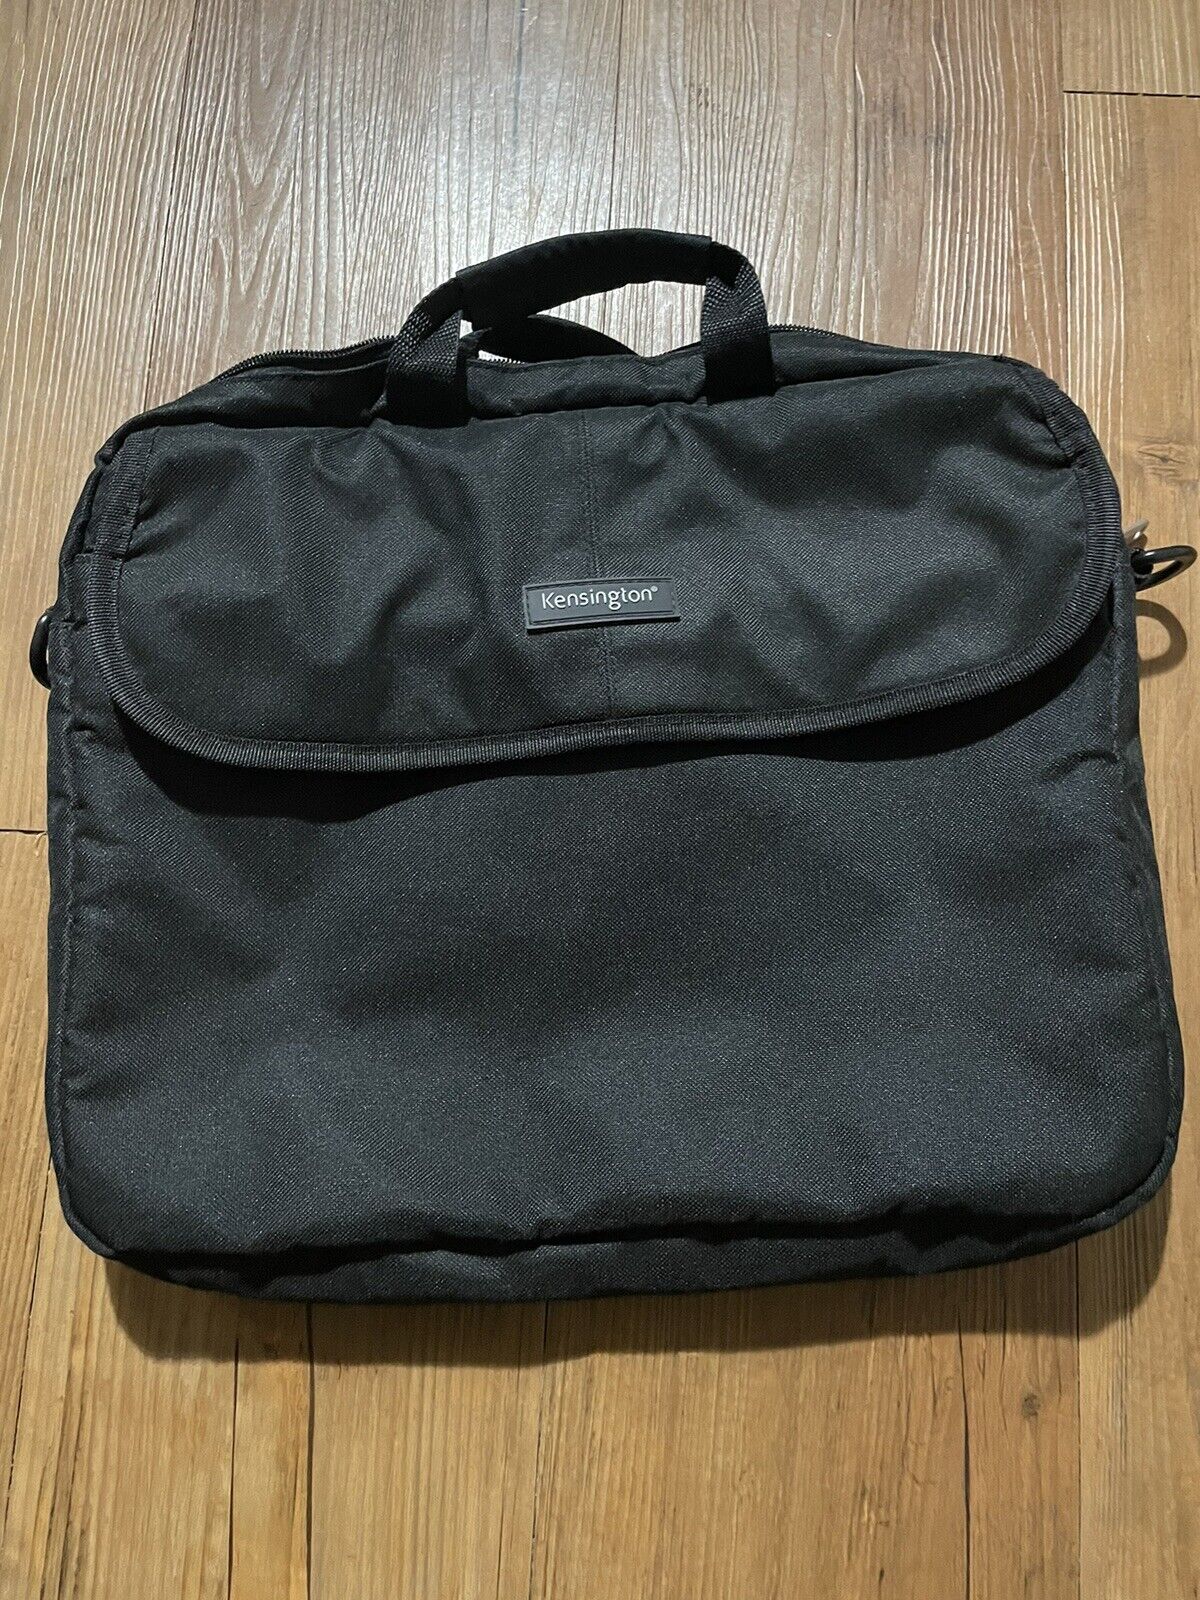 Kensington Black Padded Neoprene Laptop Bag Pre-Owned - 